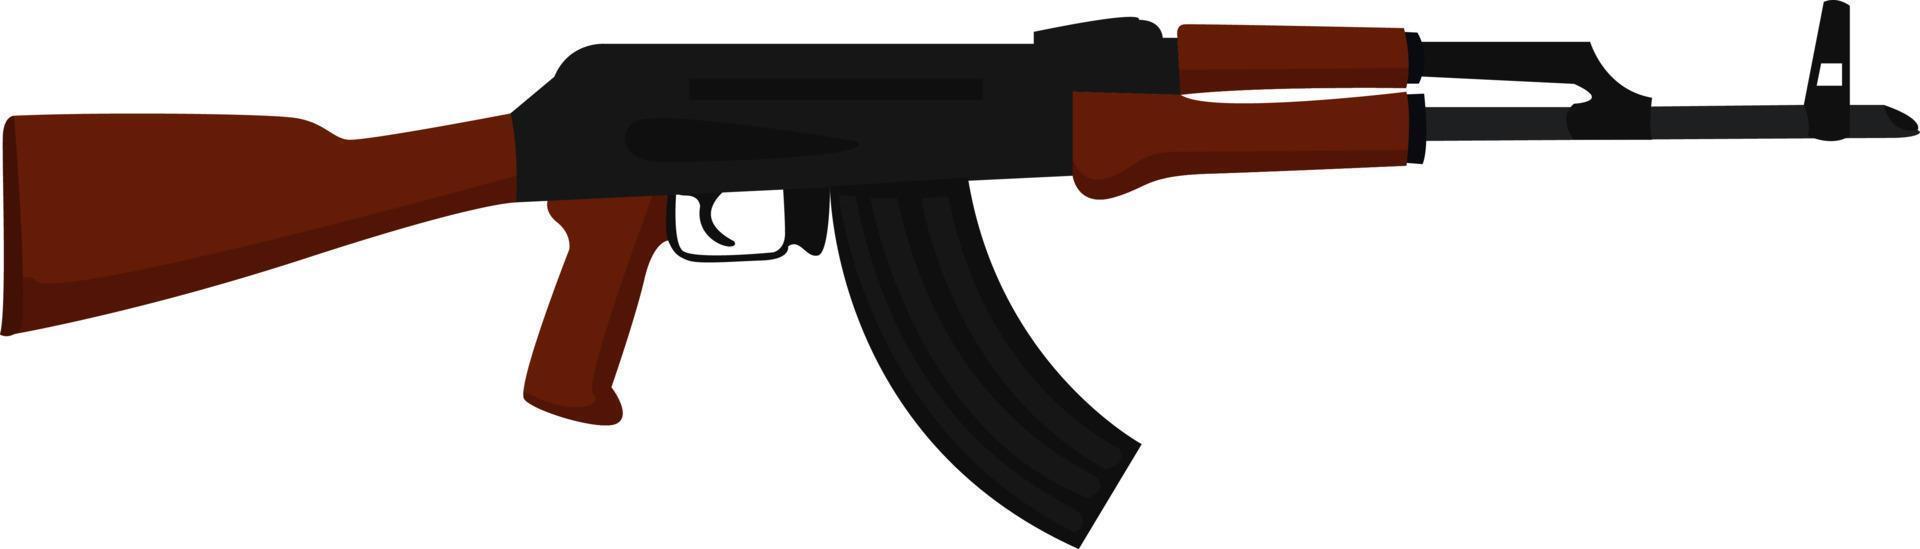 ak-47 gevär, illustration, vektor på vit bakgrund